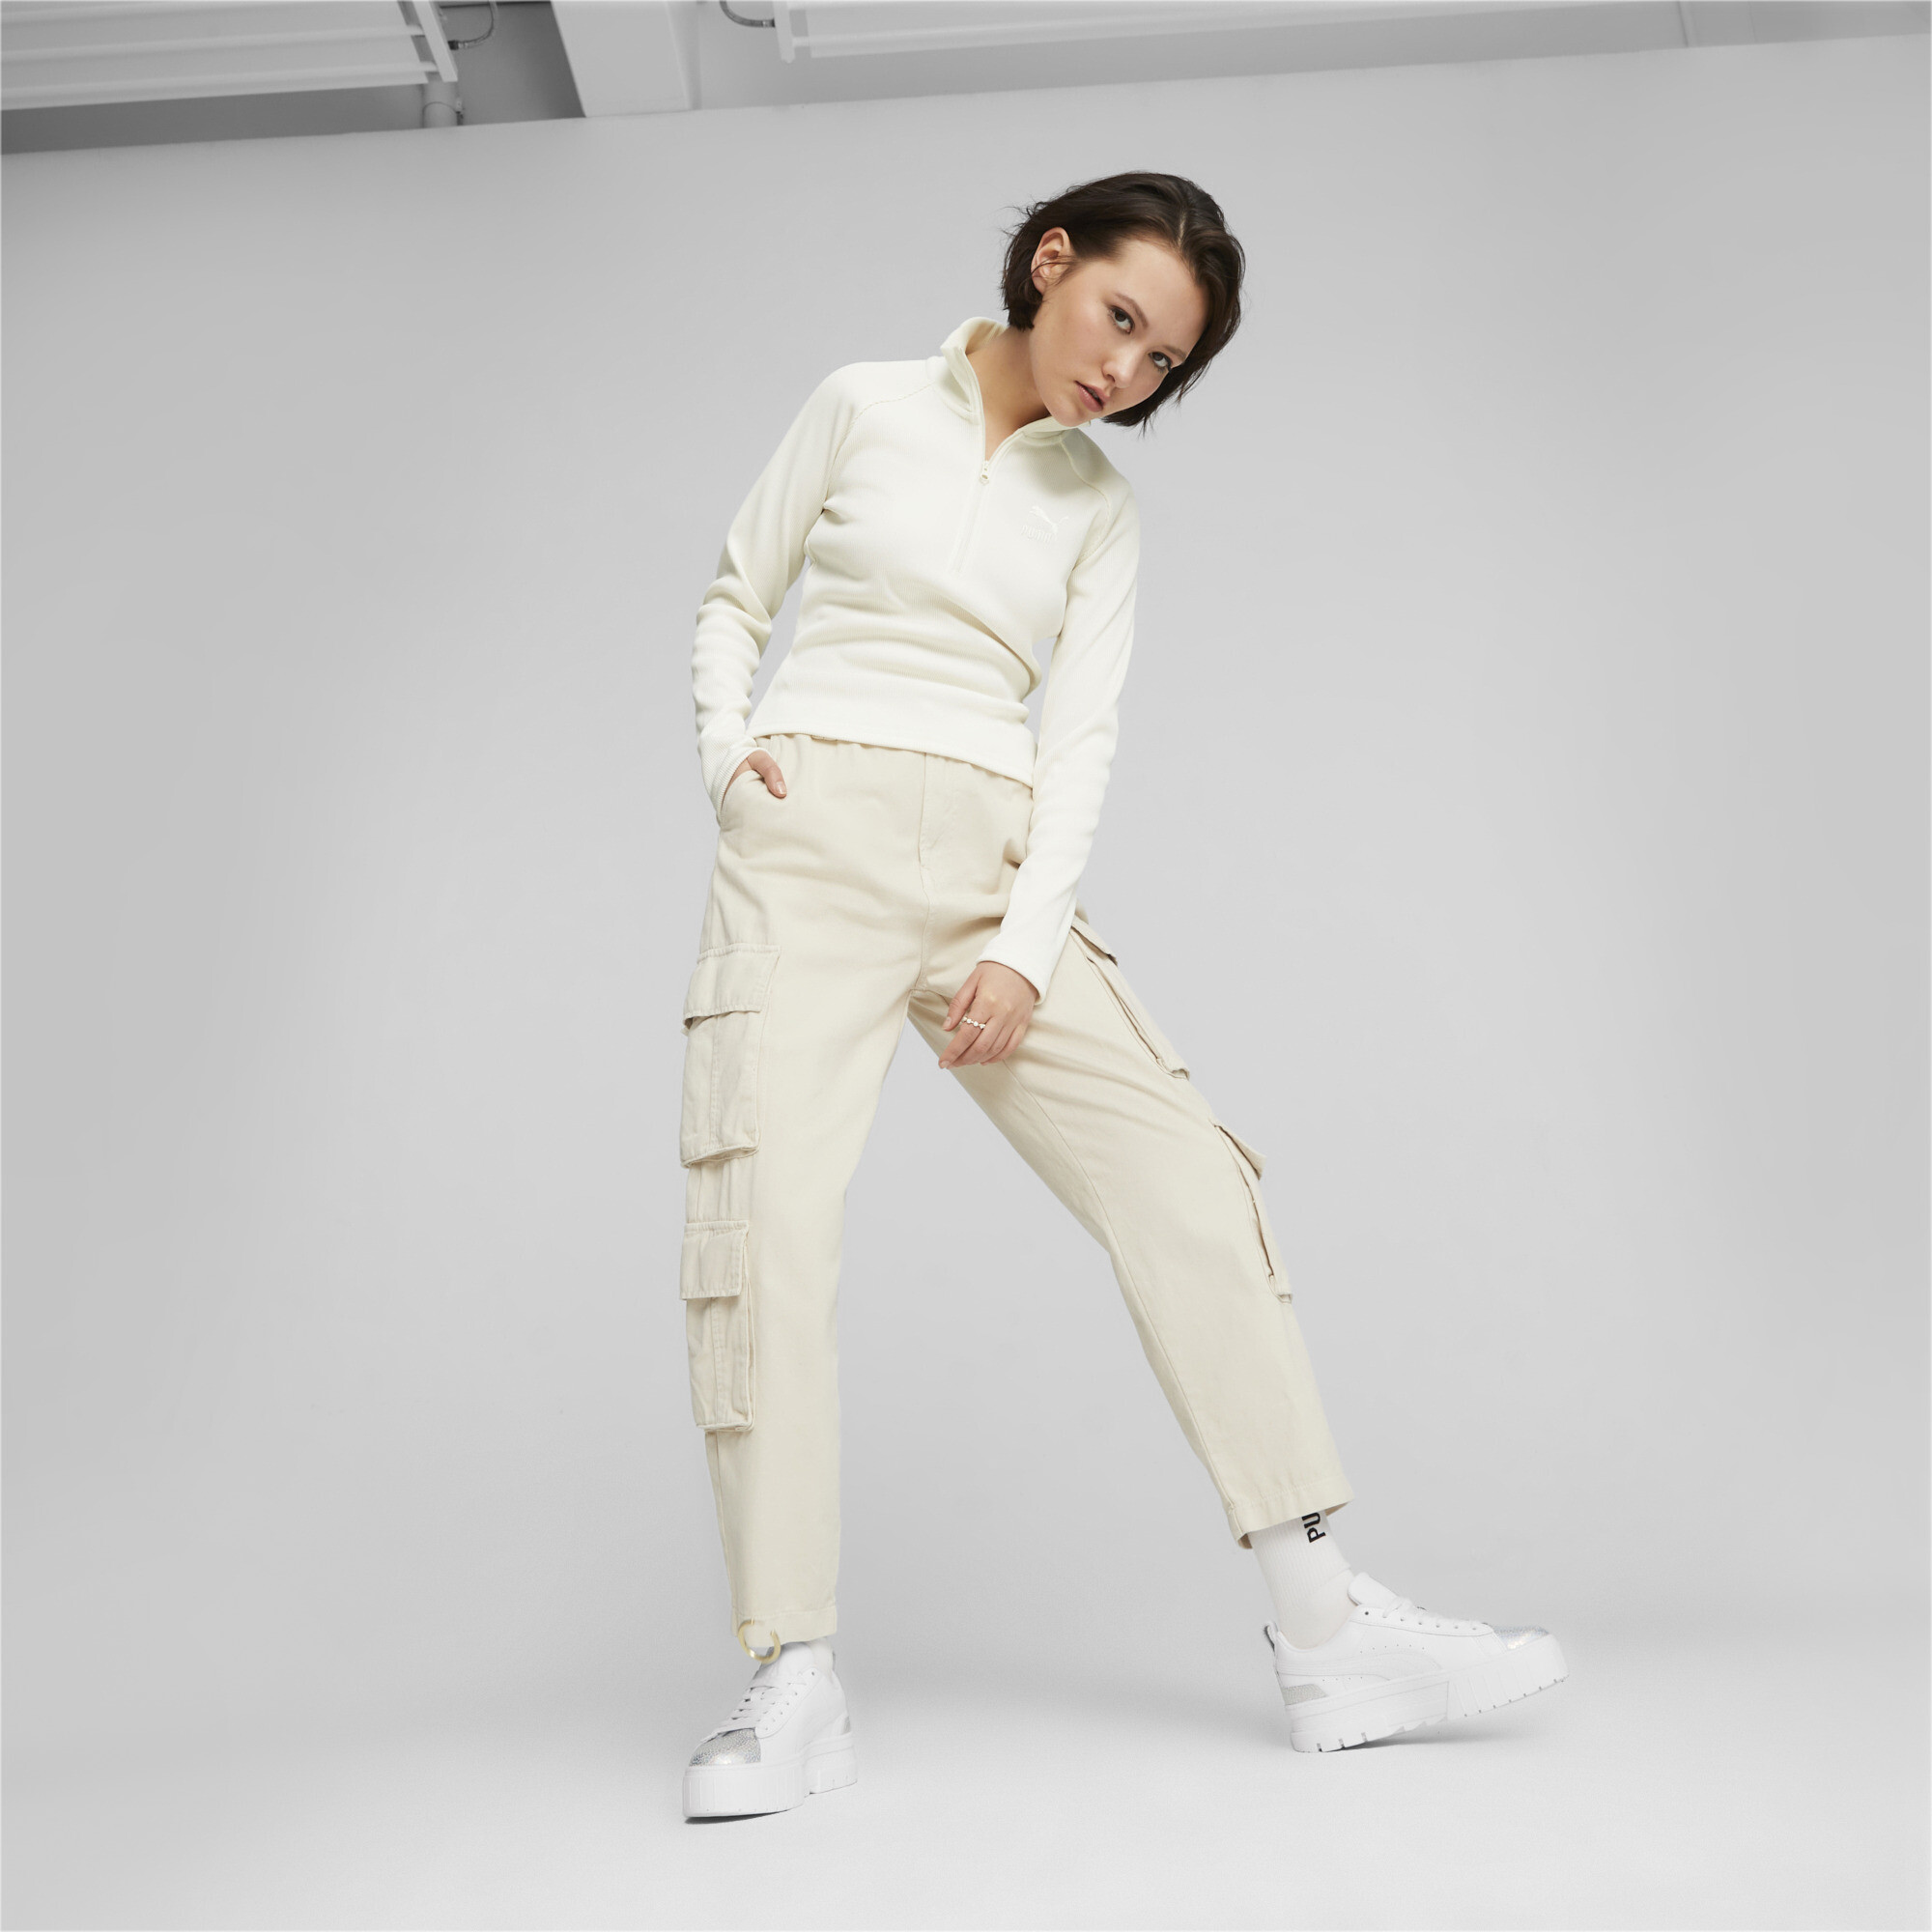 Women's PUMA Mayze Tomorrowland Fashion Sneakers Women In White, Size EU 37